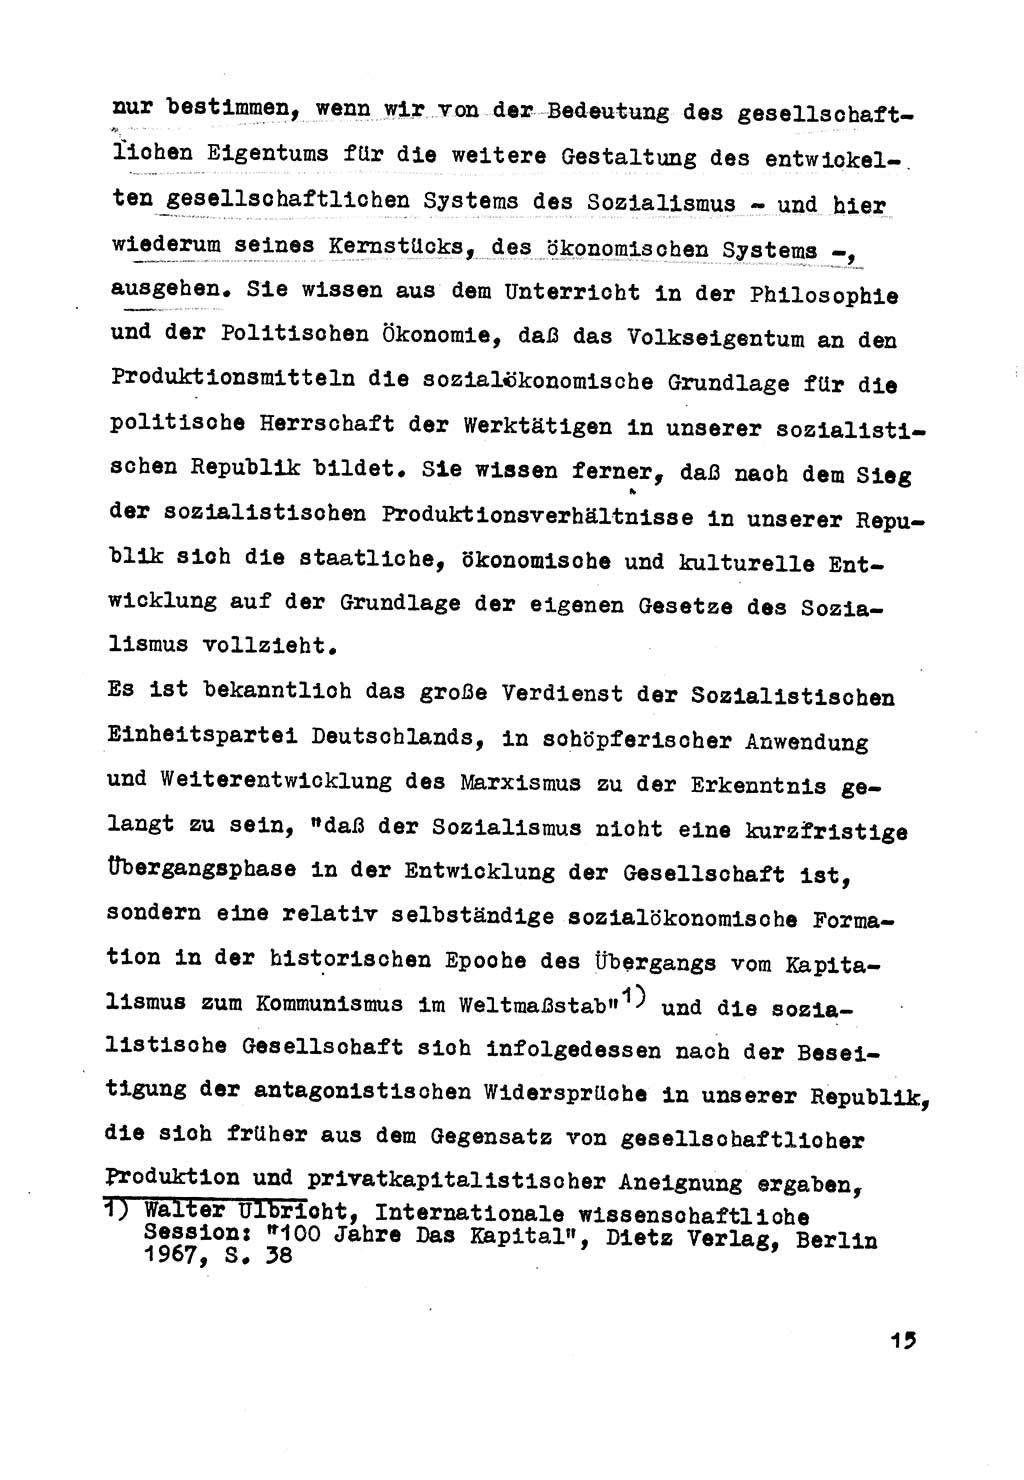 Strafrecht der DDR (Deutsche Demokratische Republik), Besonderer Teil, Lehrmaterial, Heft 5 1970, Seite 15 (Strafr. DDR BT Lehrmat. H. 5 1970, S. 15)